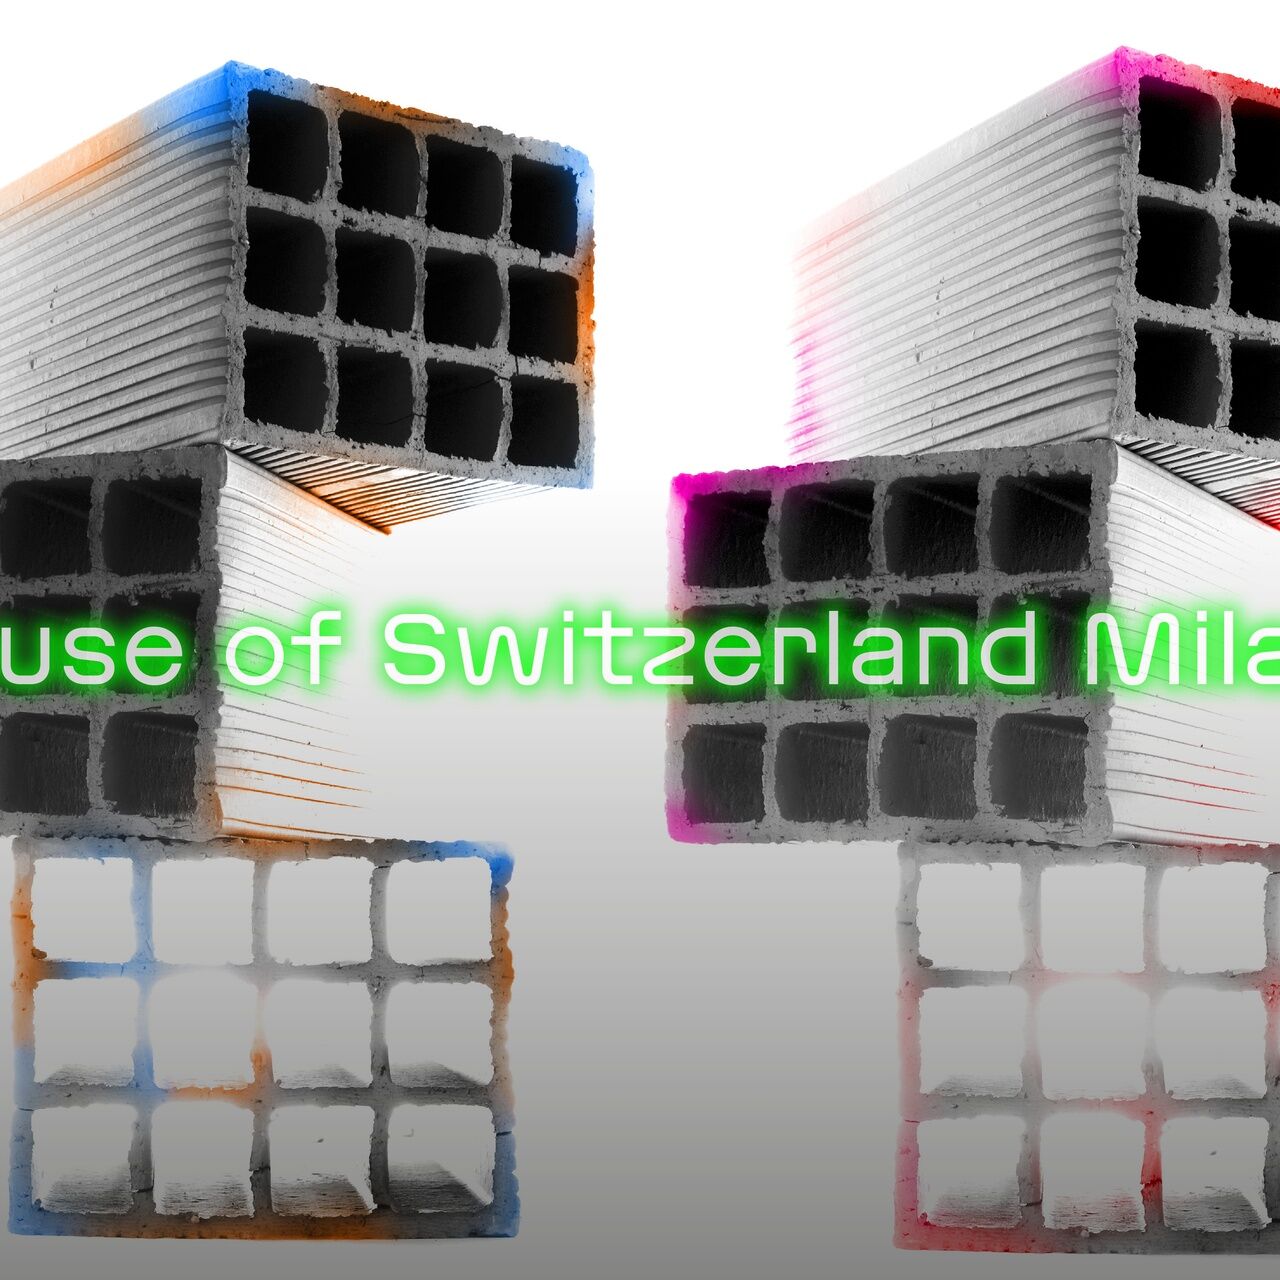 मिलान डिज़ाइन वीक: 17 से 23 अप्रैल 2023 तक "मिलान फैशन वीक" में प्रेजेंस स्विट्जरलैंड और प्रो हेल्वेटिया की भागीदारी का मुख्य दृश्य